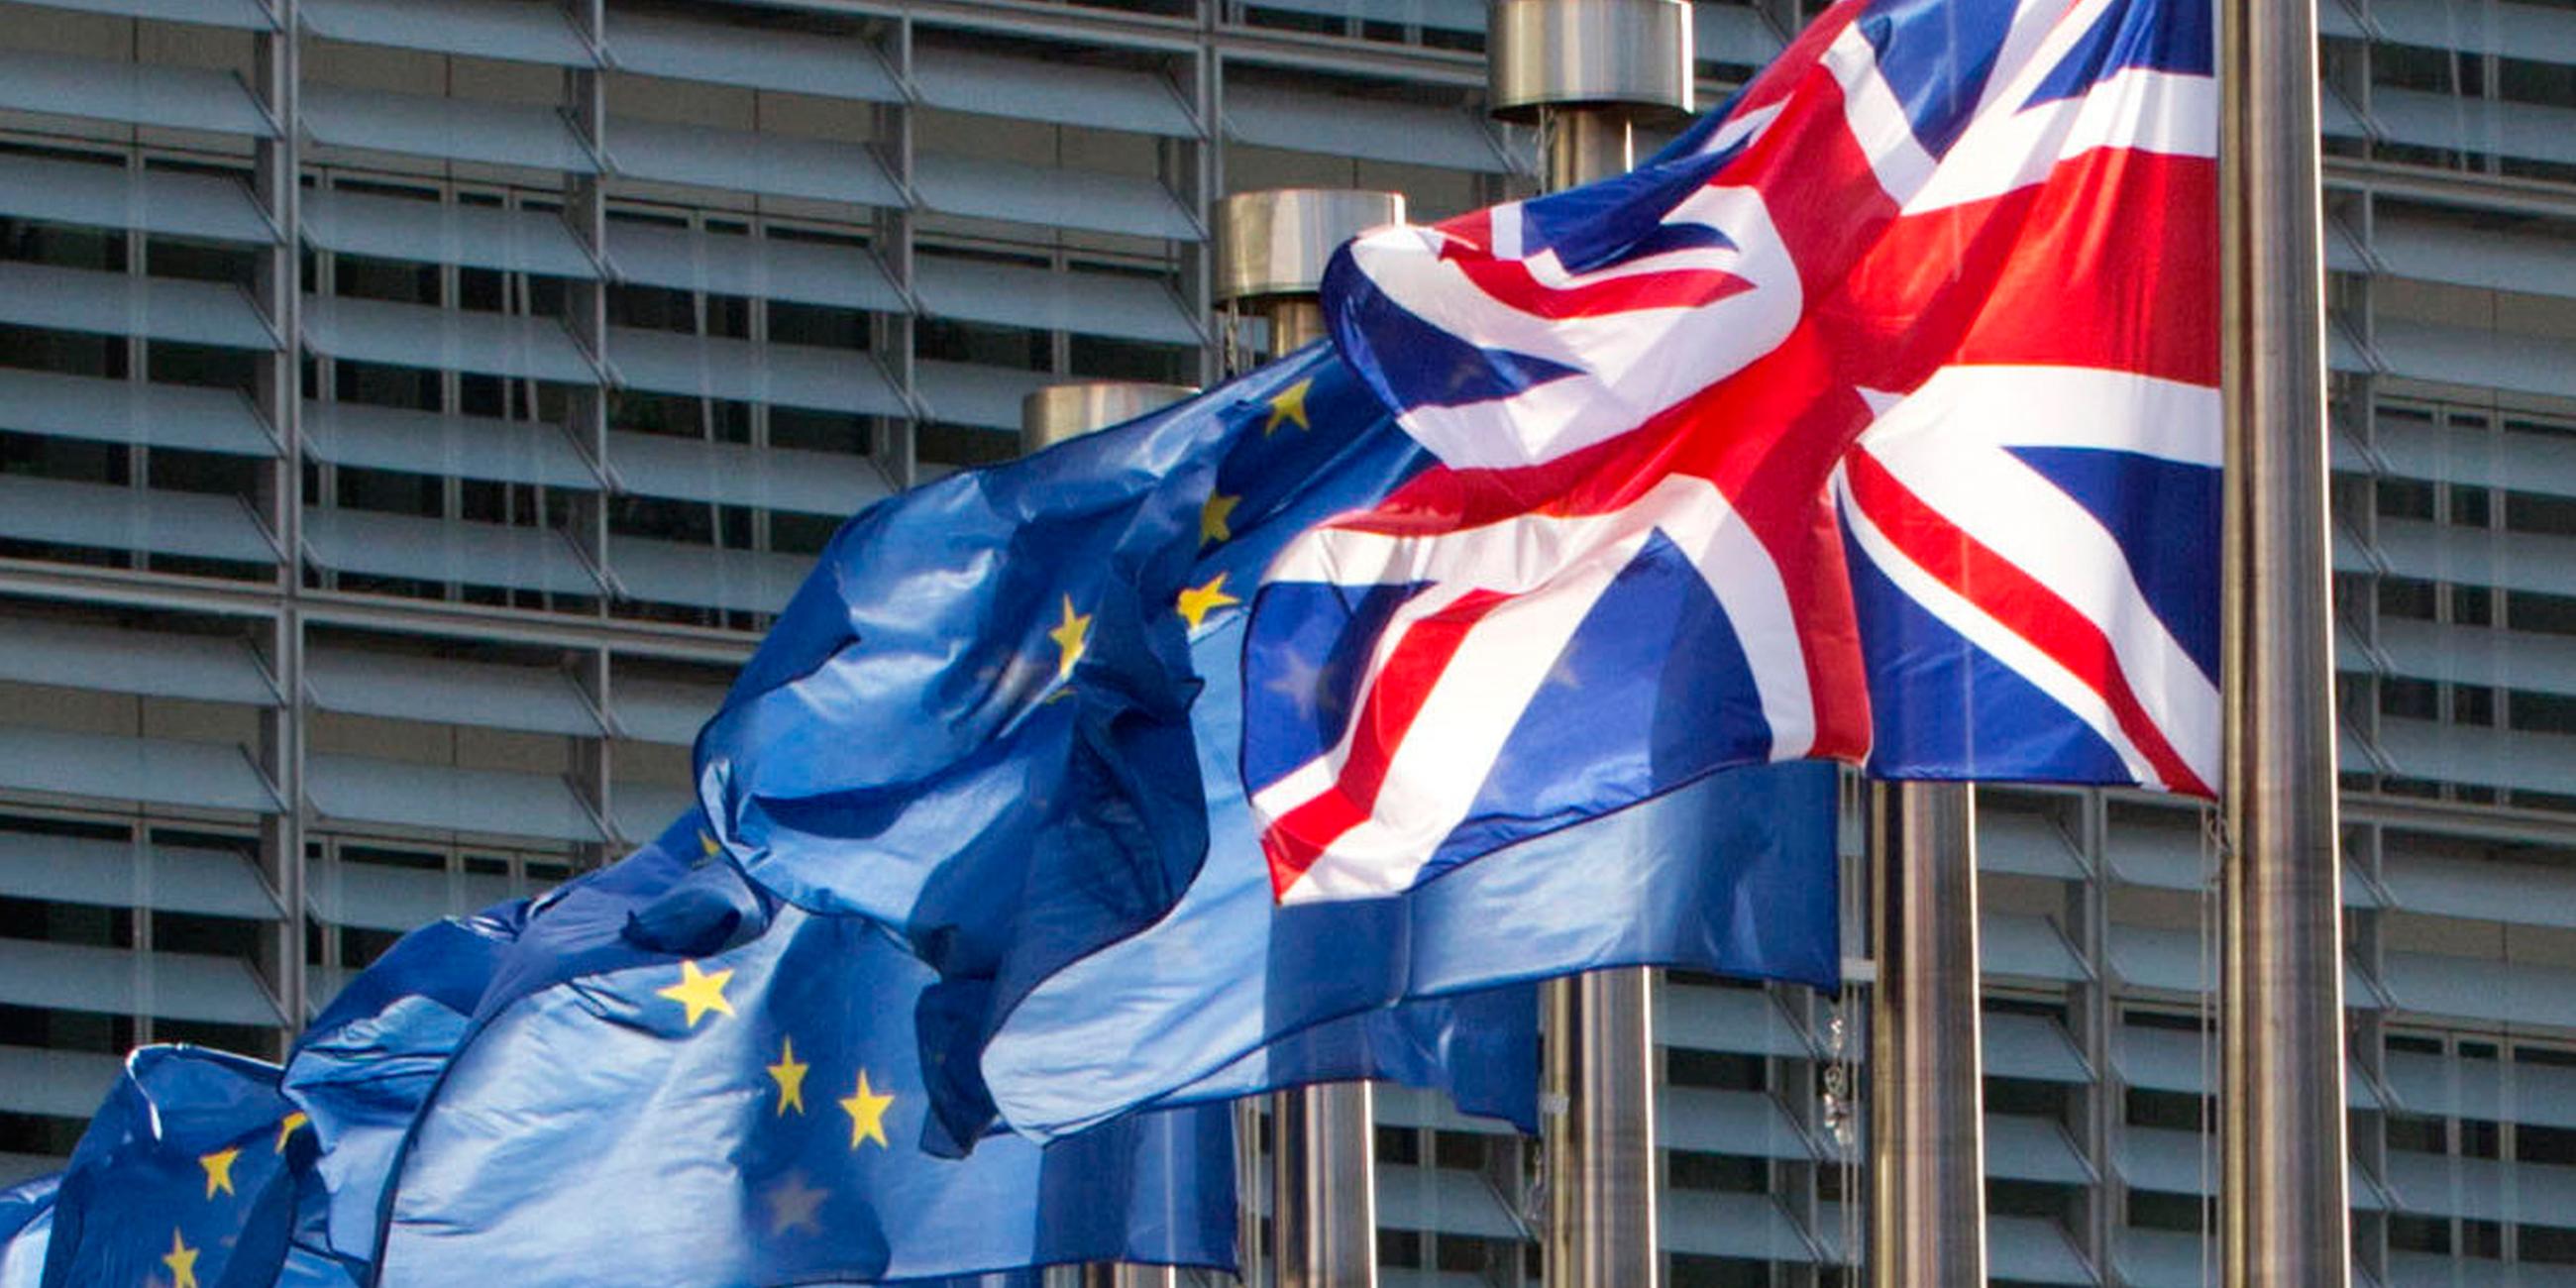 Archiv: Flaggen der EU und von Großbritannien am 16.10.2017 in Brüssel